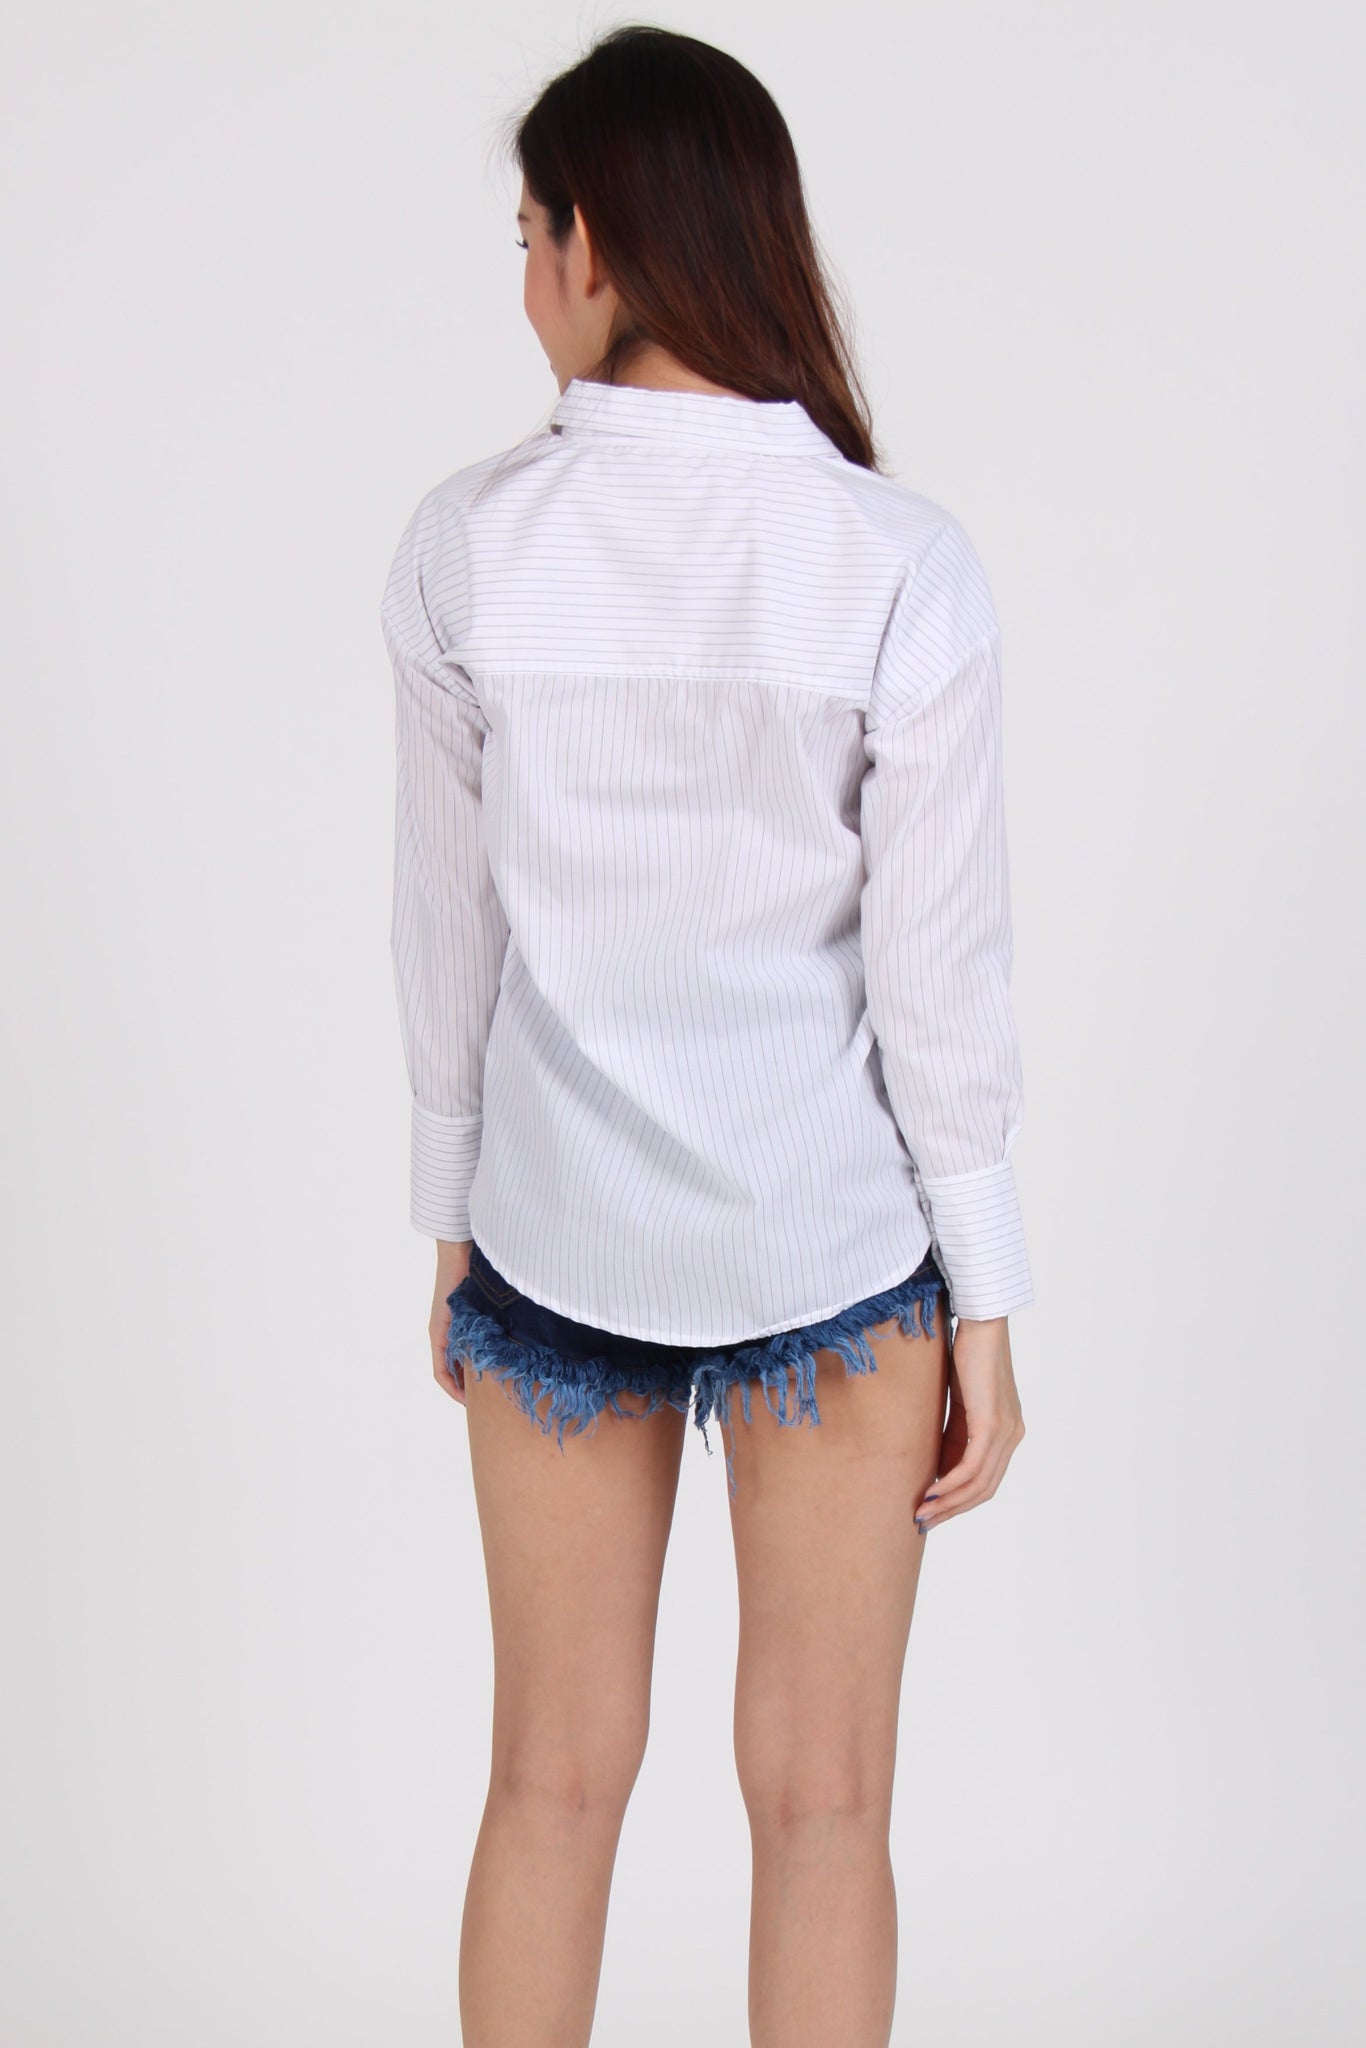 Pinstripe Multi-Way Boyfriend Shirt in White